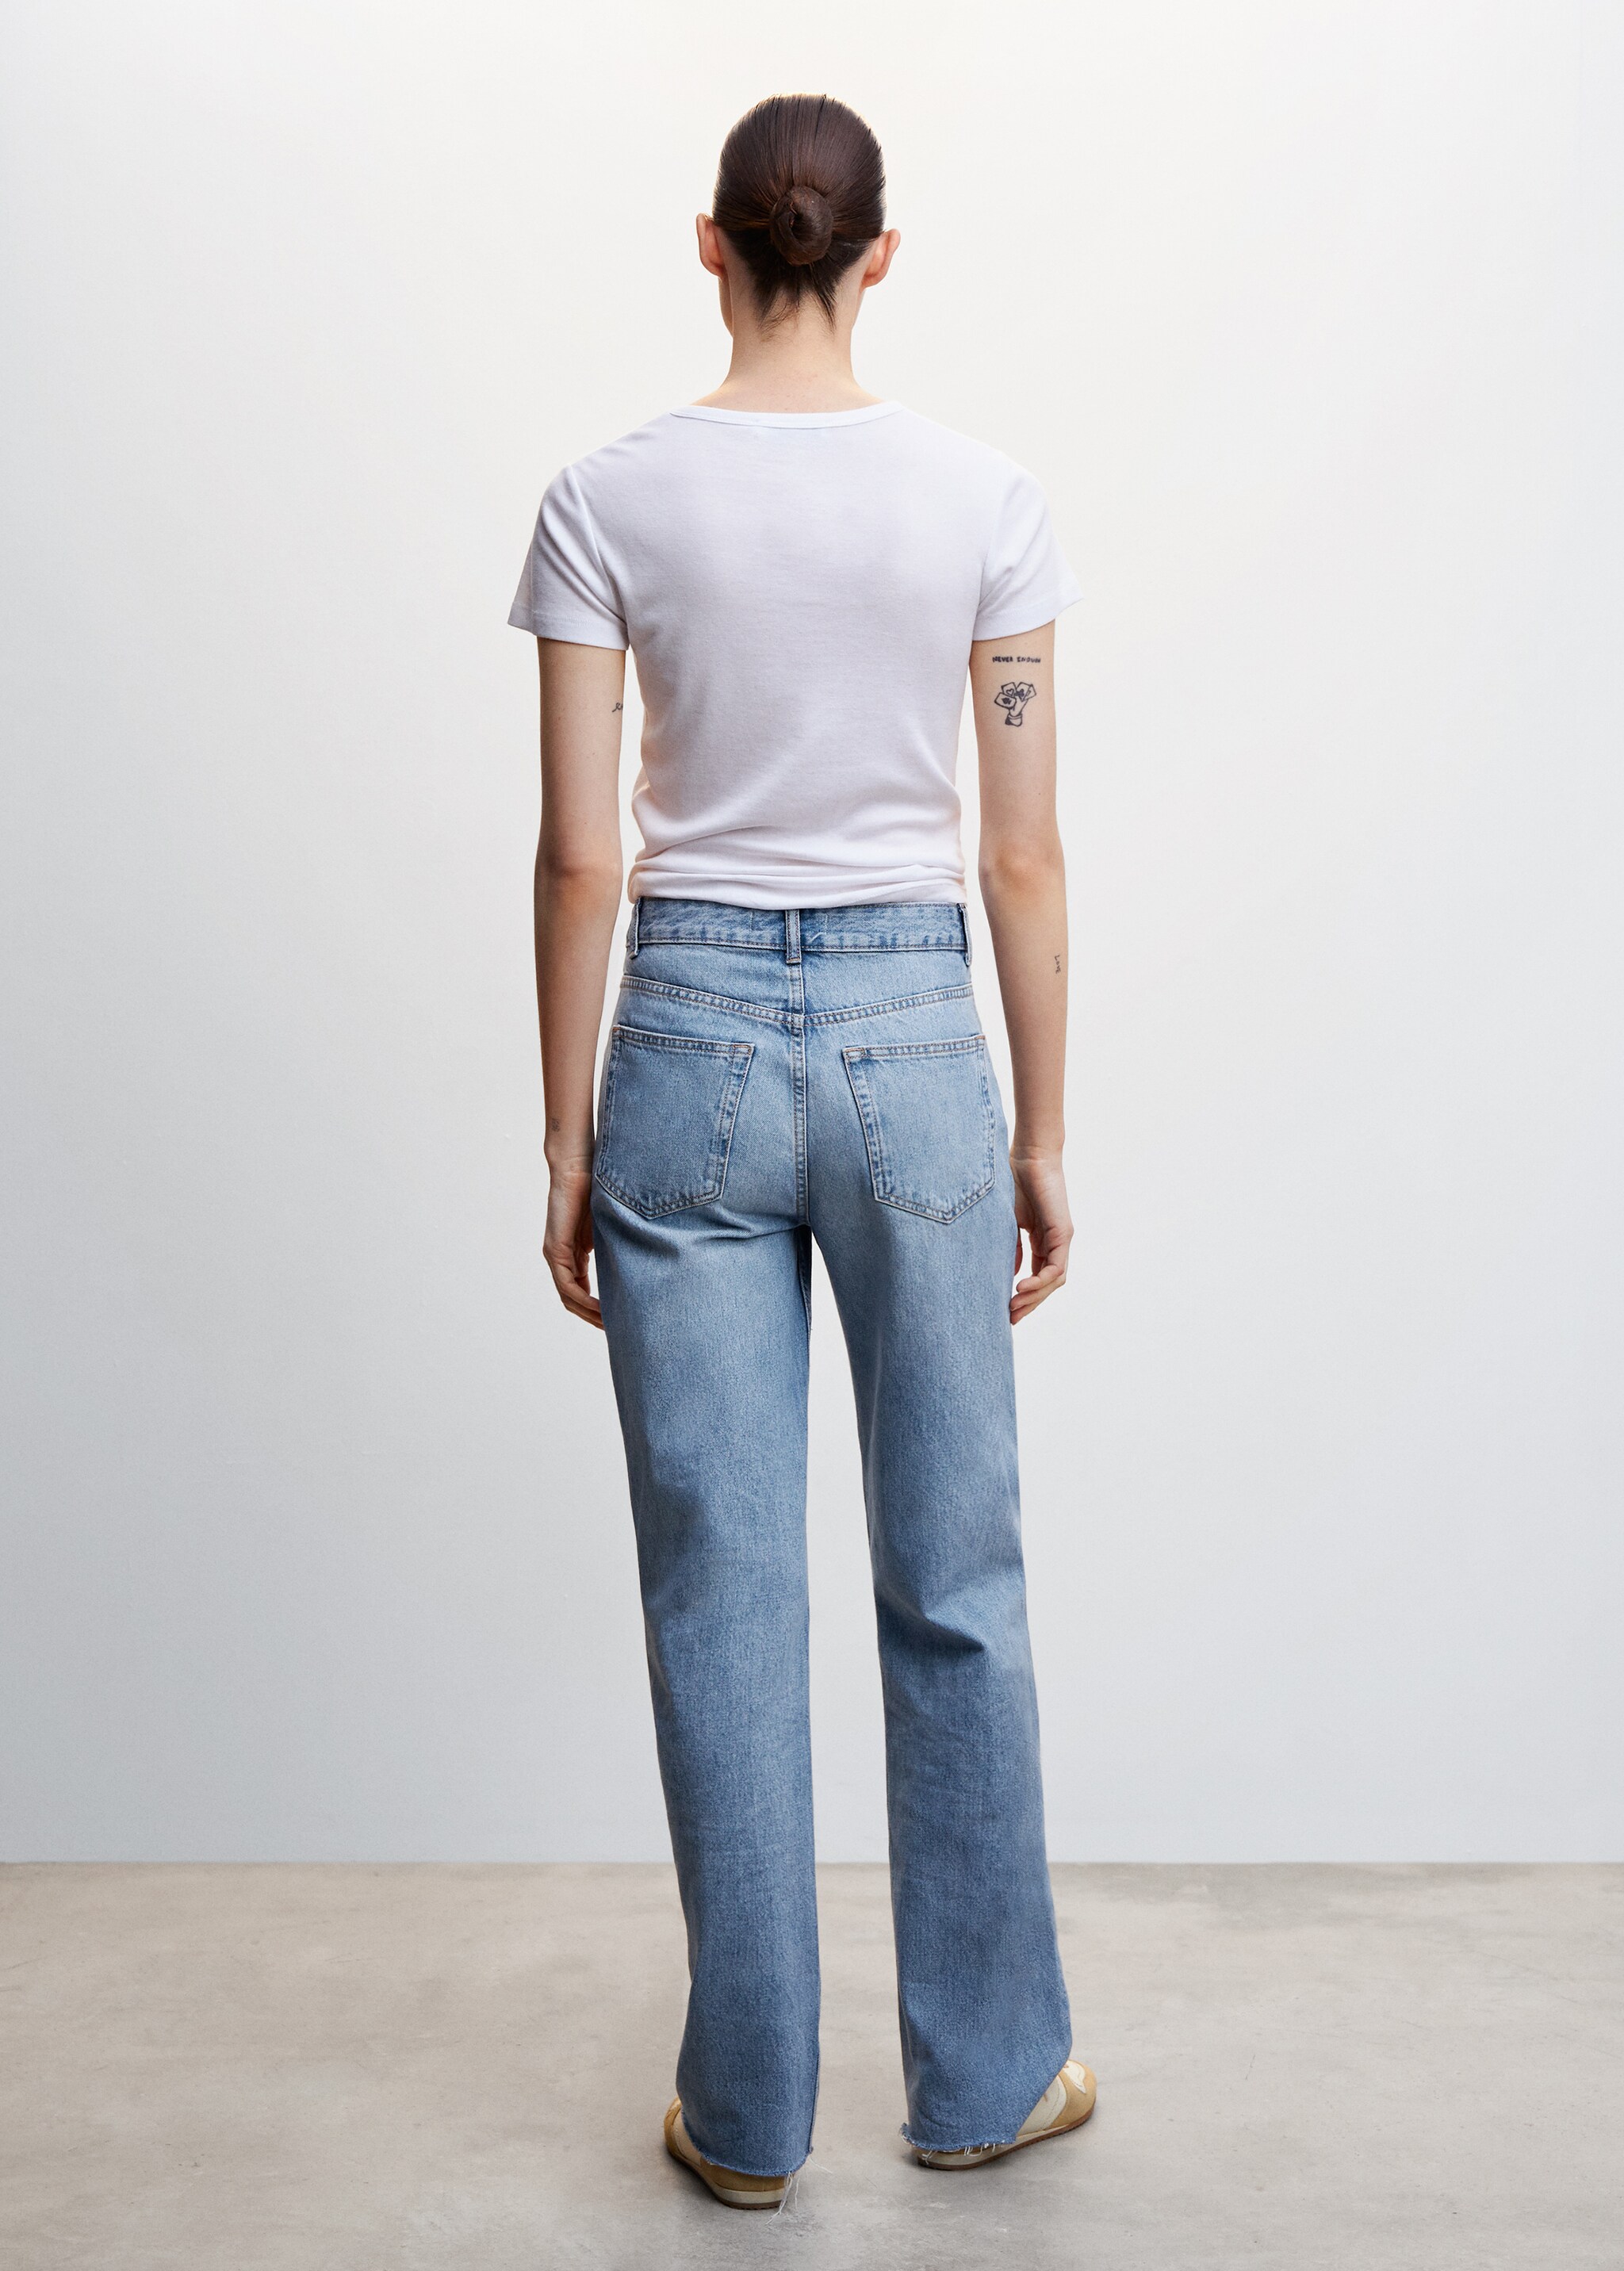 Jeans wideleg tiro medio - Reverso del artículo